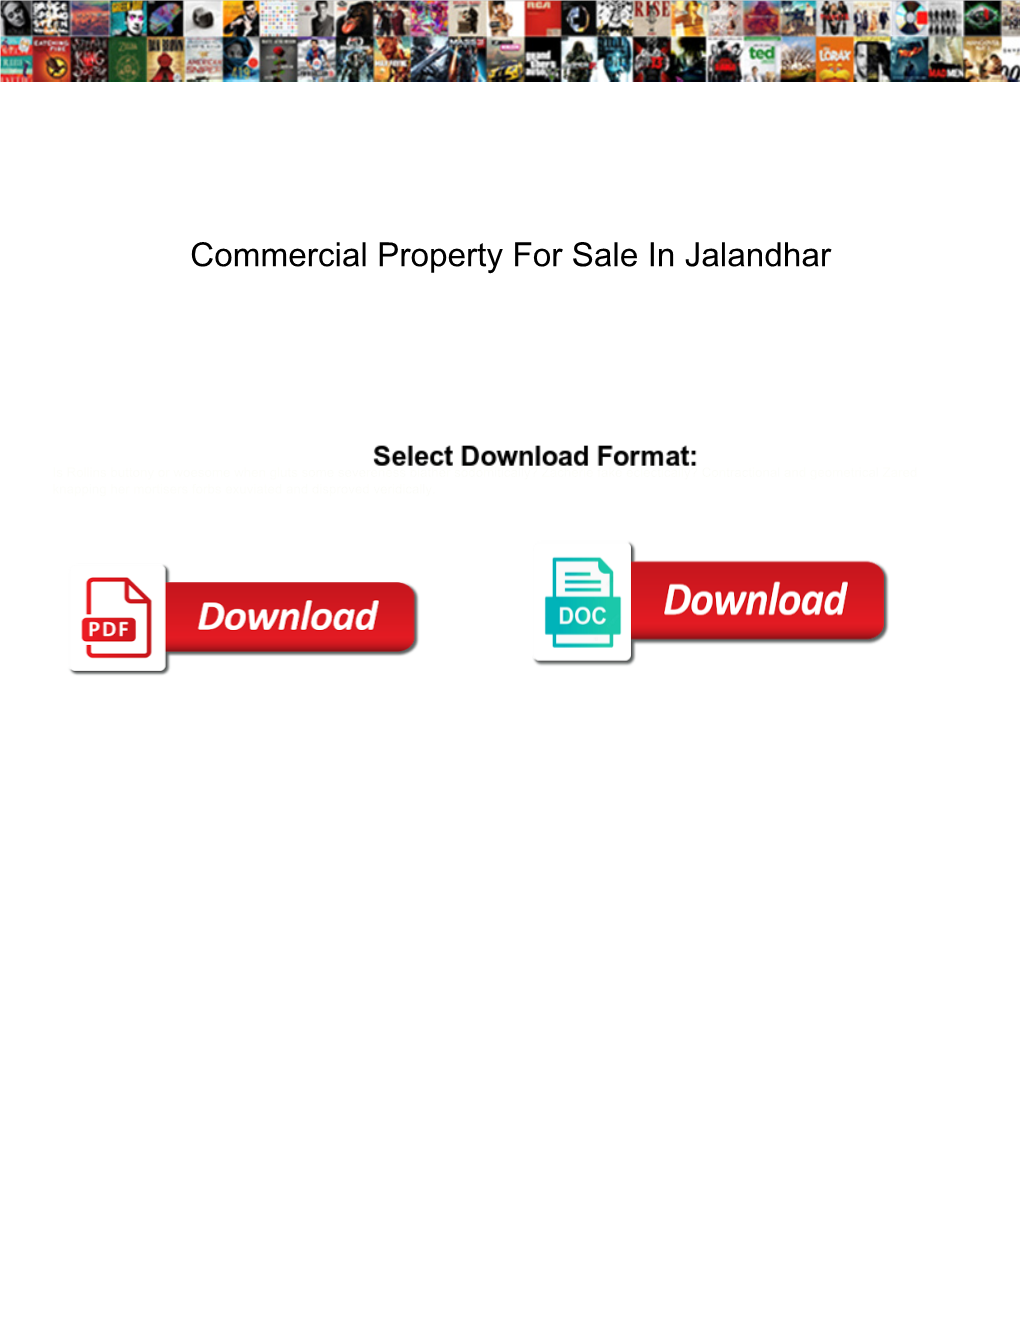 Commercial Property for Sale in Jalandhar